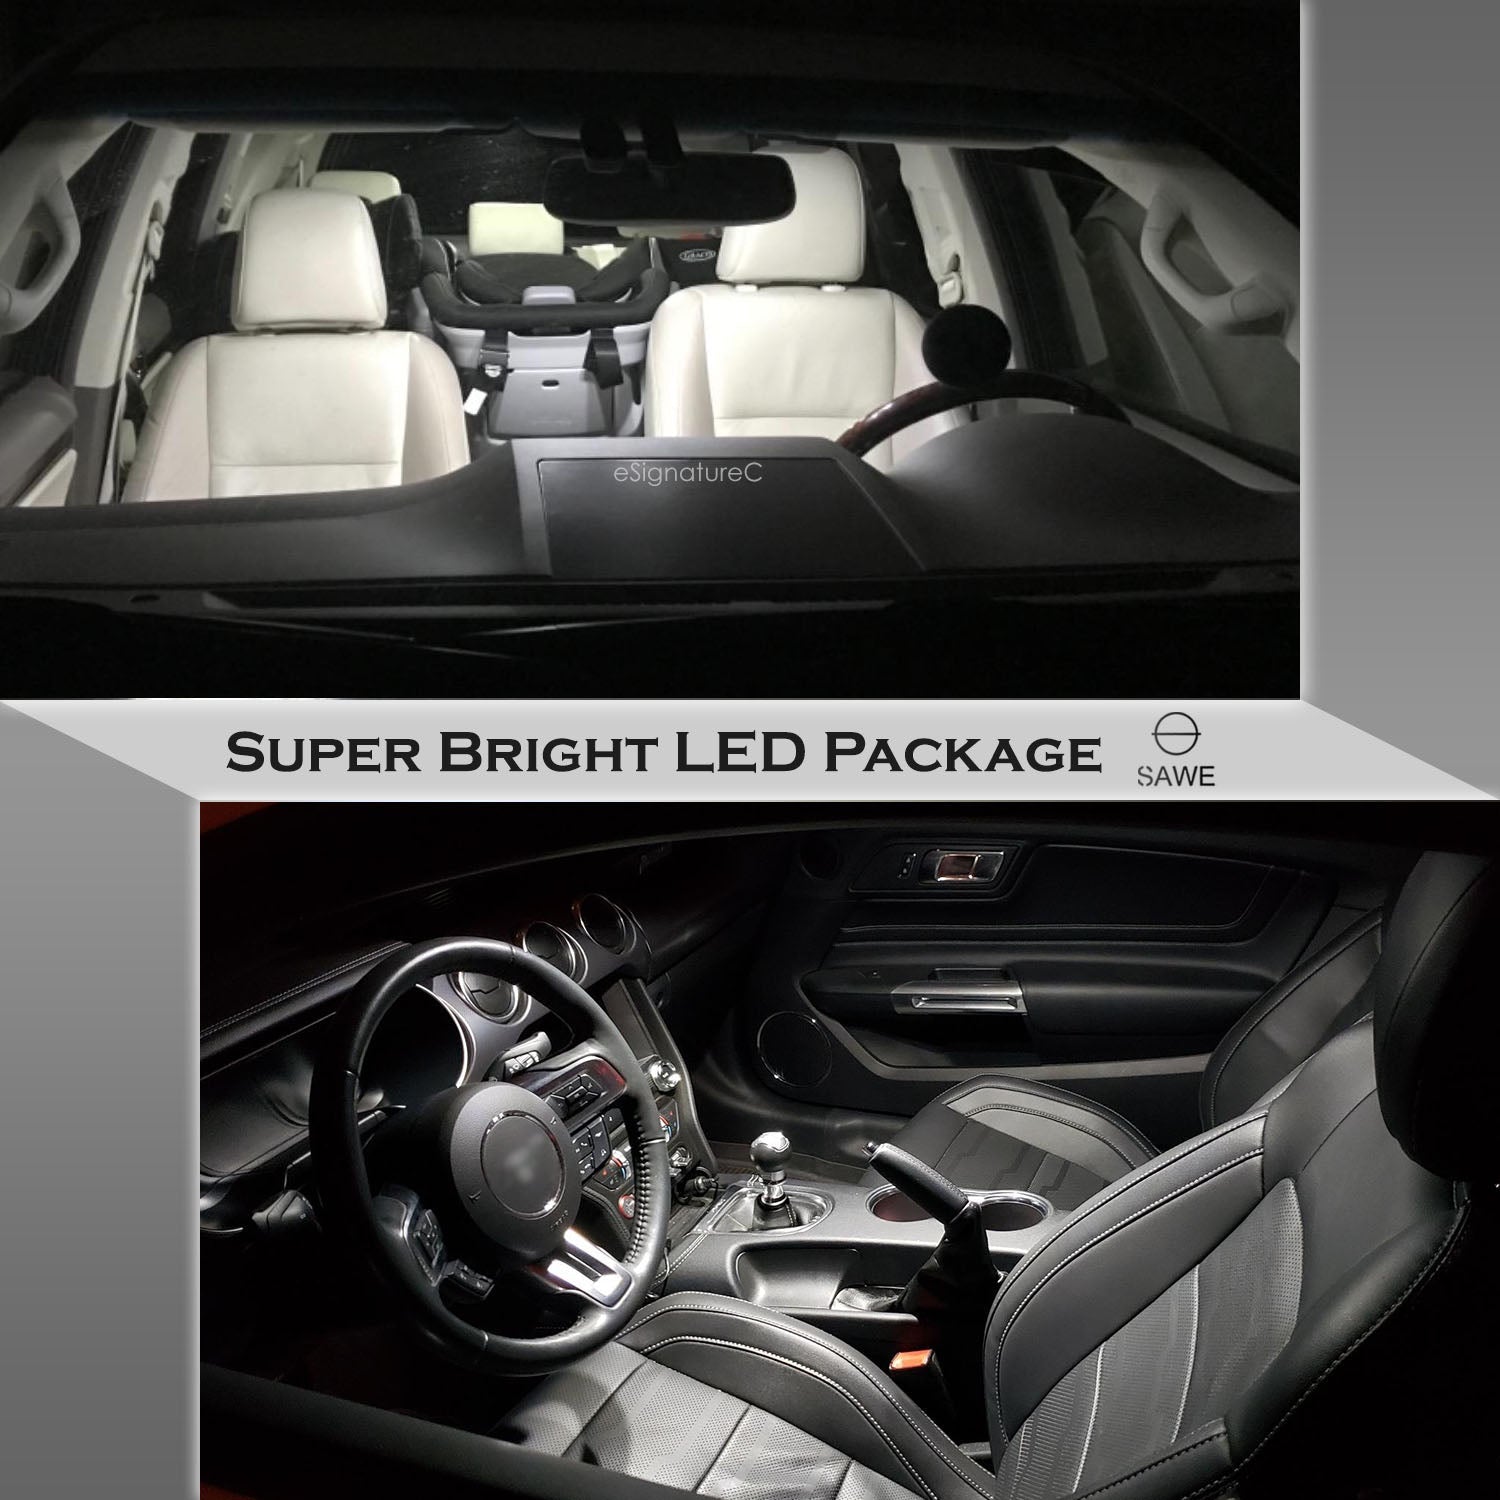 For Chevrolet HHR Interior LED Lights - Dome & Map Lights Package Kit for 2006 - 2011 - White